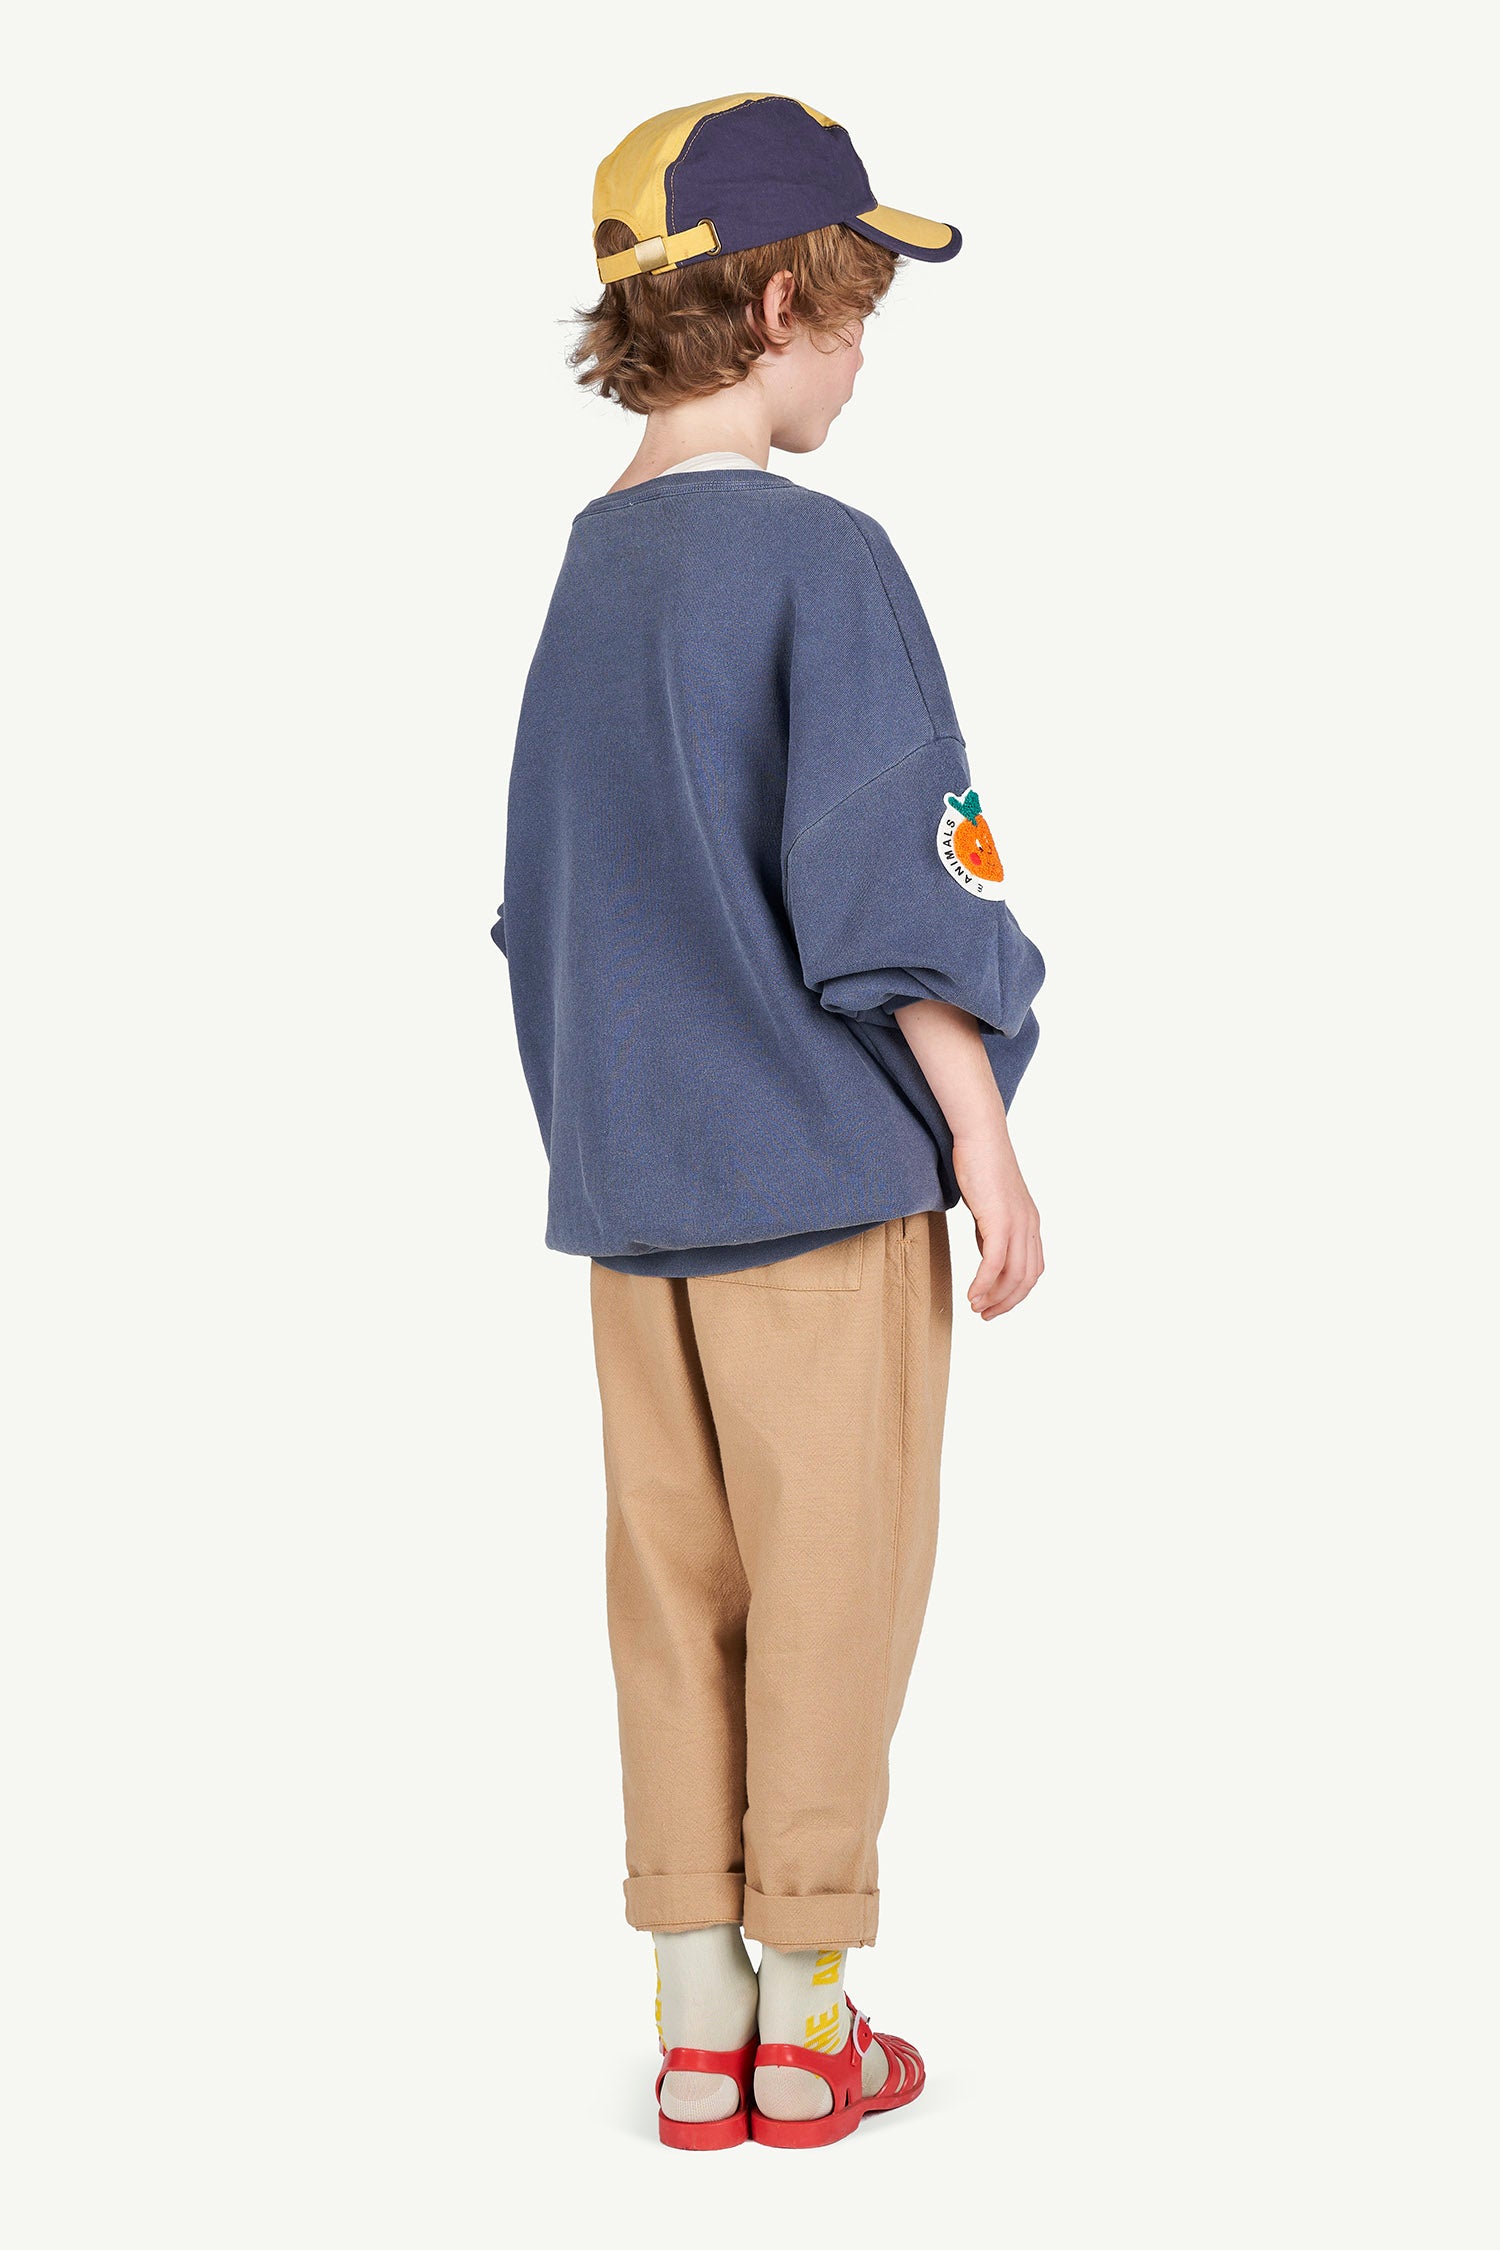 ELEPHANT KIDS PANTS, BROWN UNIFORMS - Cemarose Children's Fashion Boutique